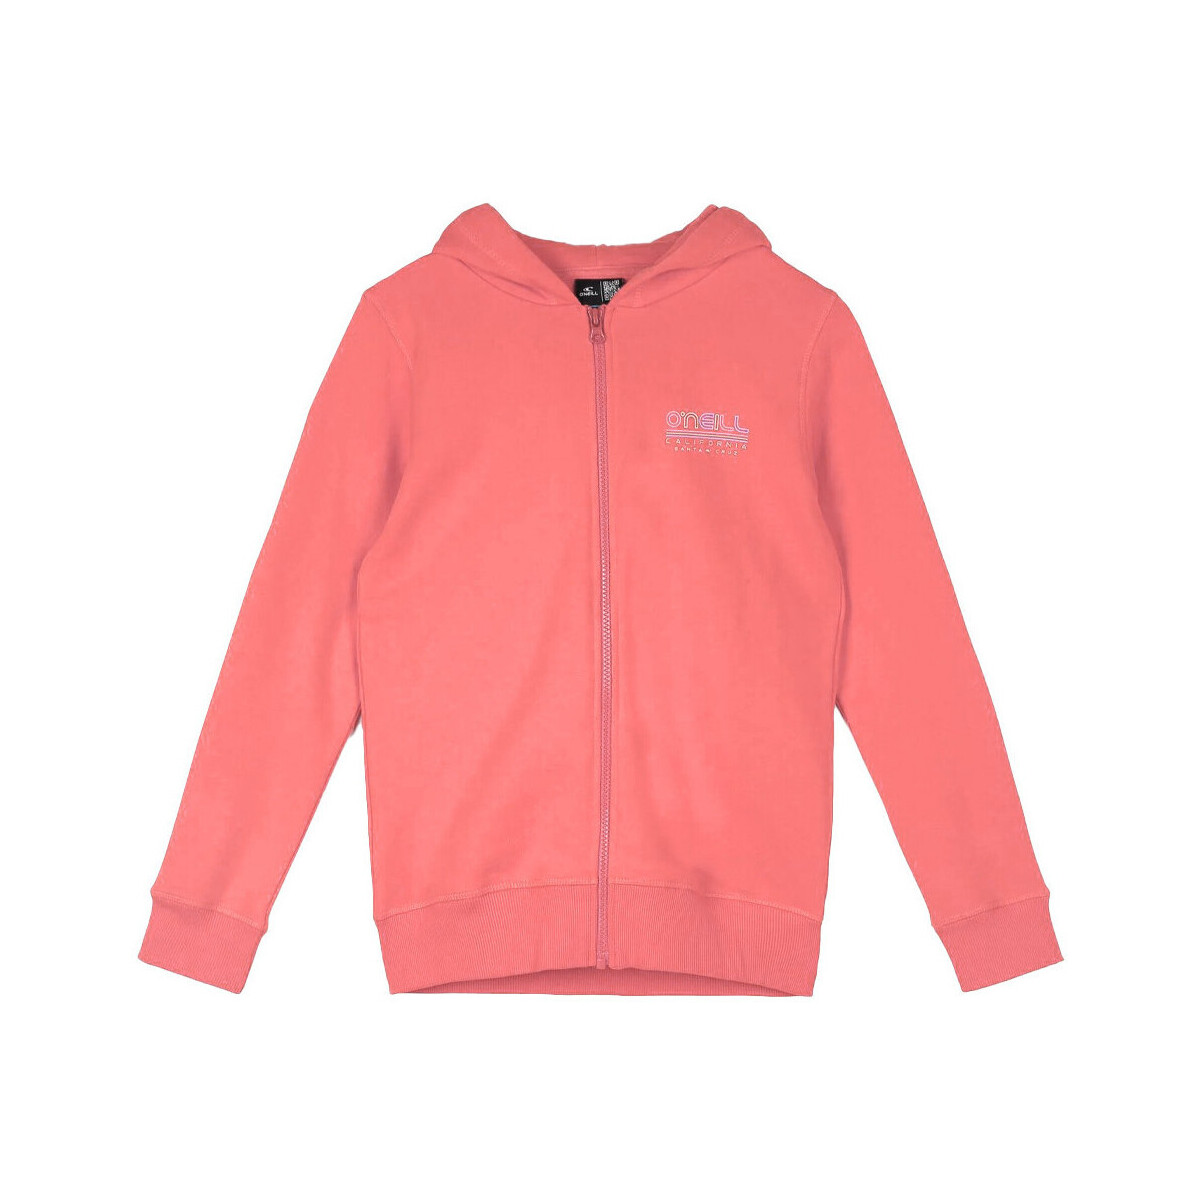 Textiel Meisjes Sweaters / Sweatshirts O'neill  Roze